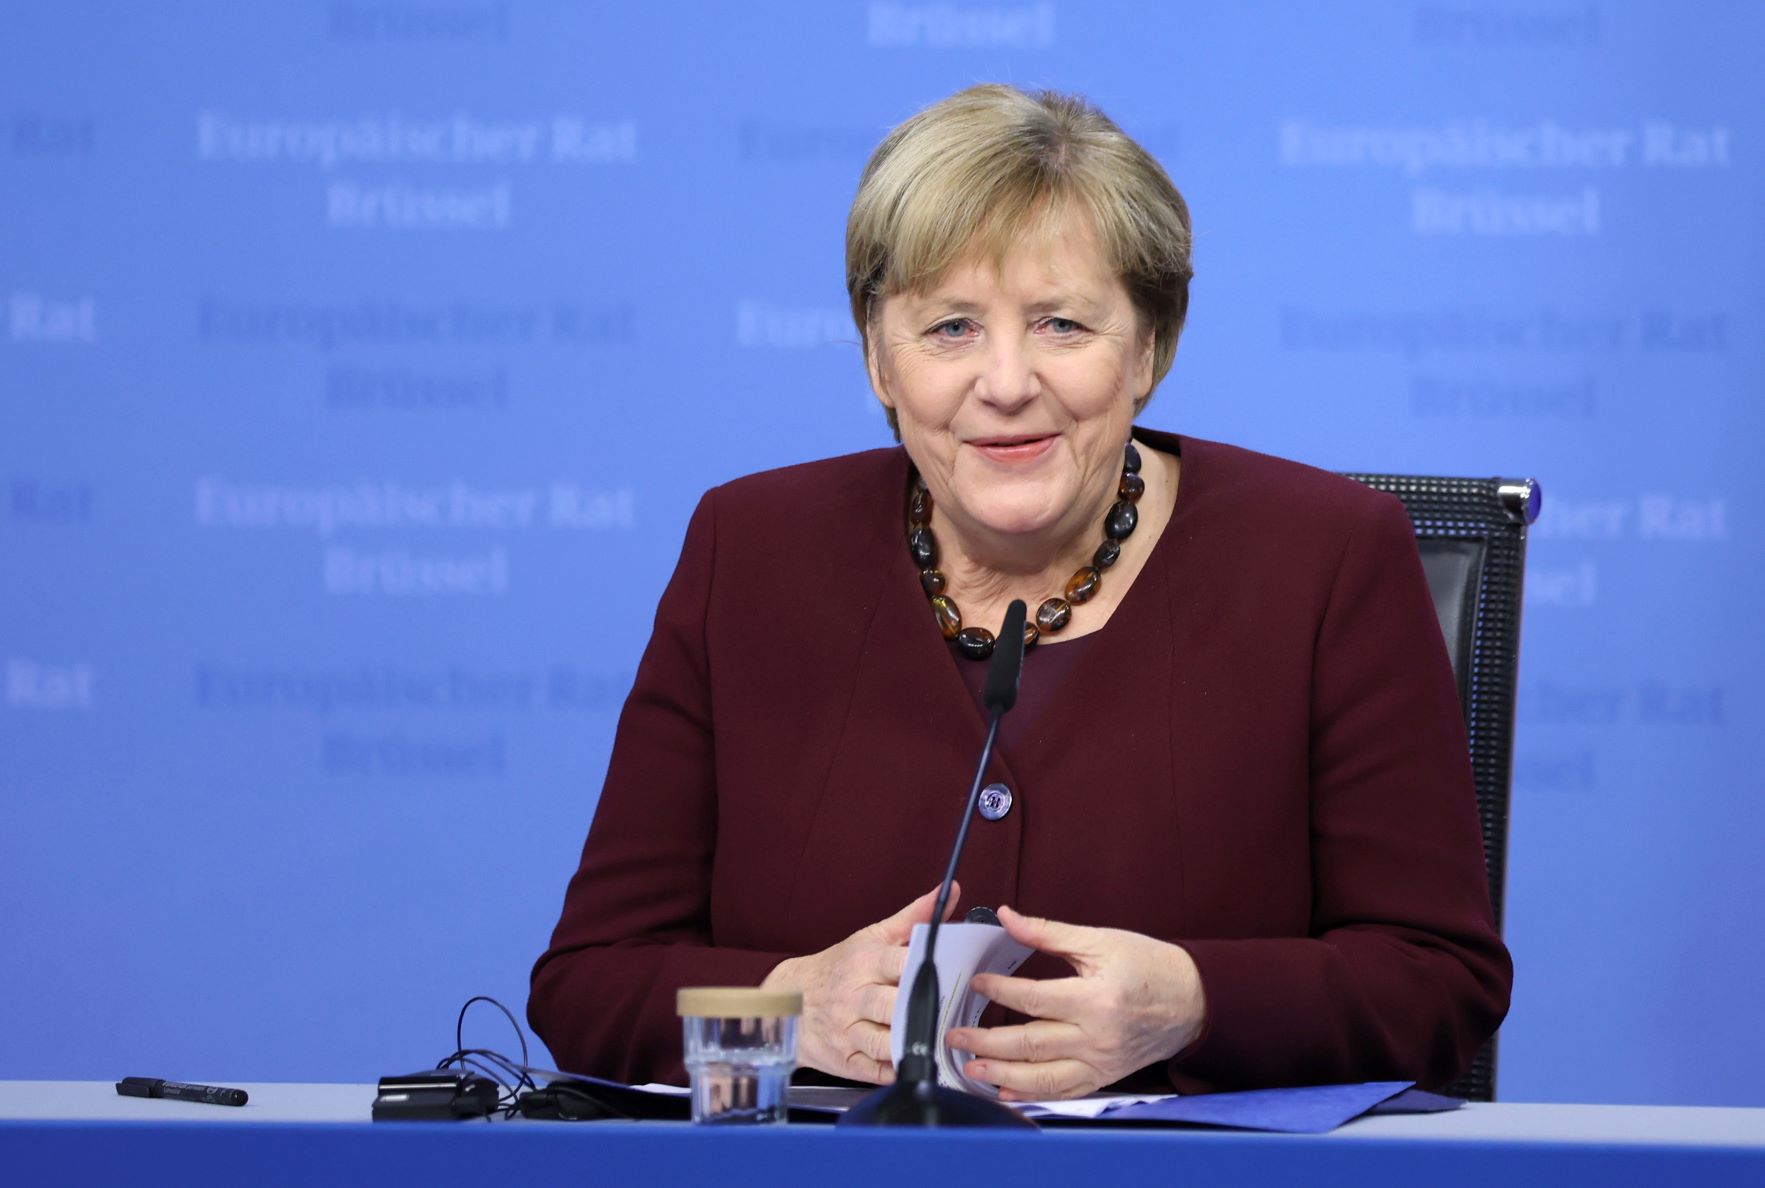 20211026-image-mb-dpa-Angela Merkel